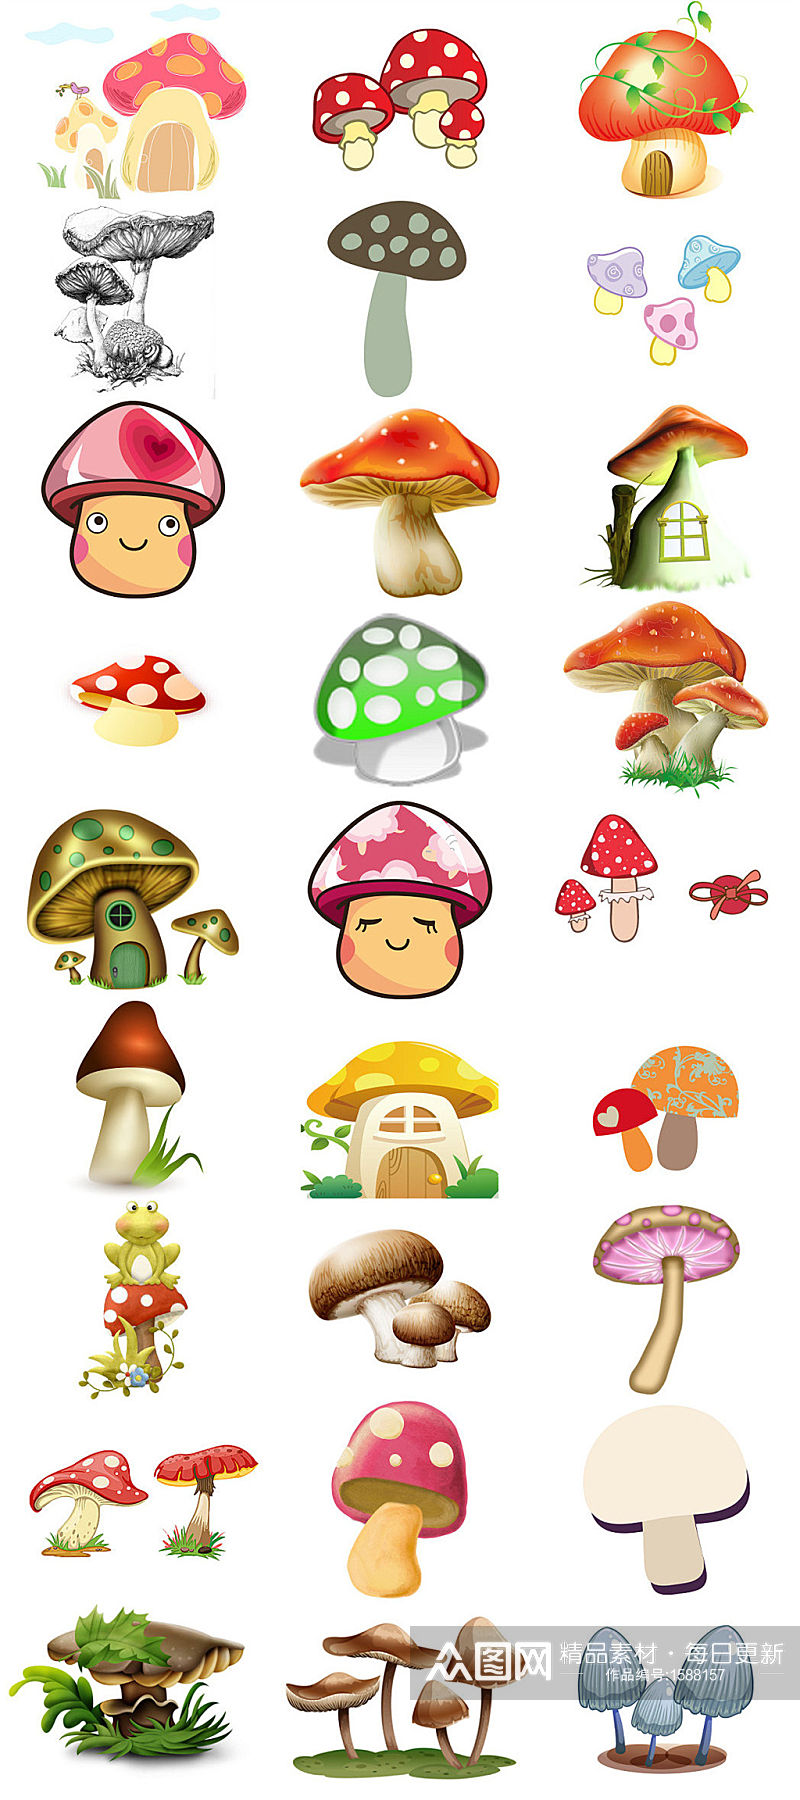 可爱蘑菇卡通图片大全素材